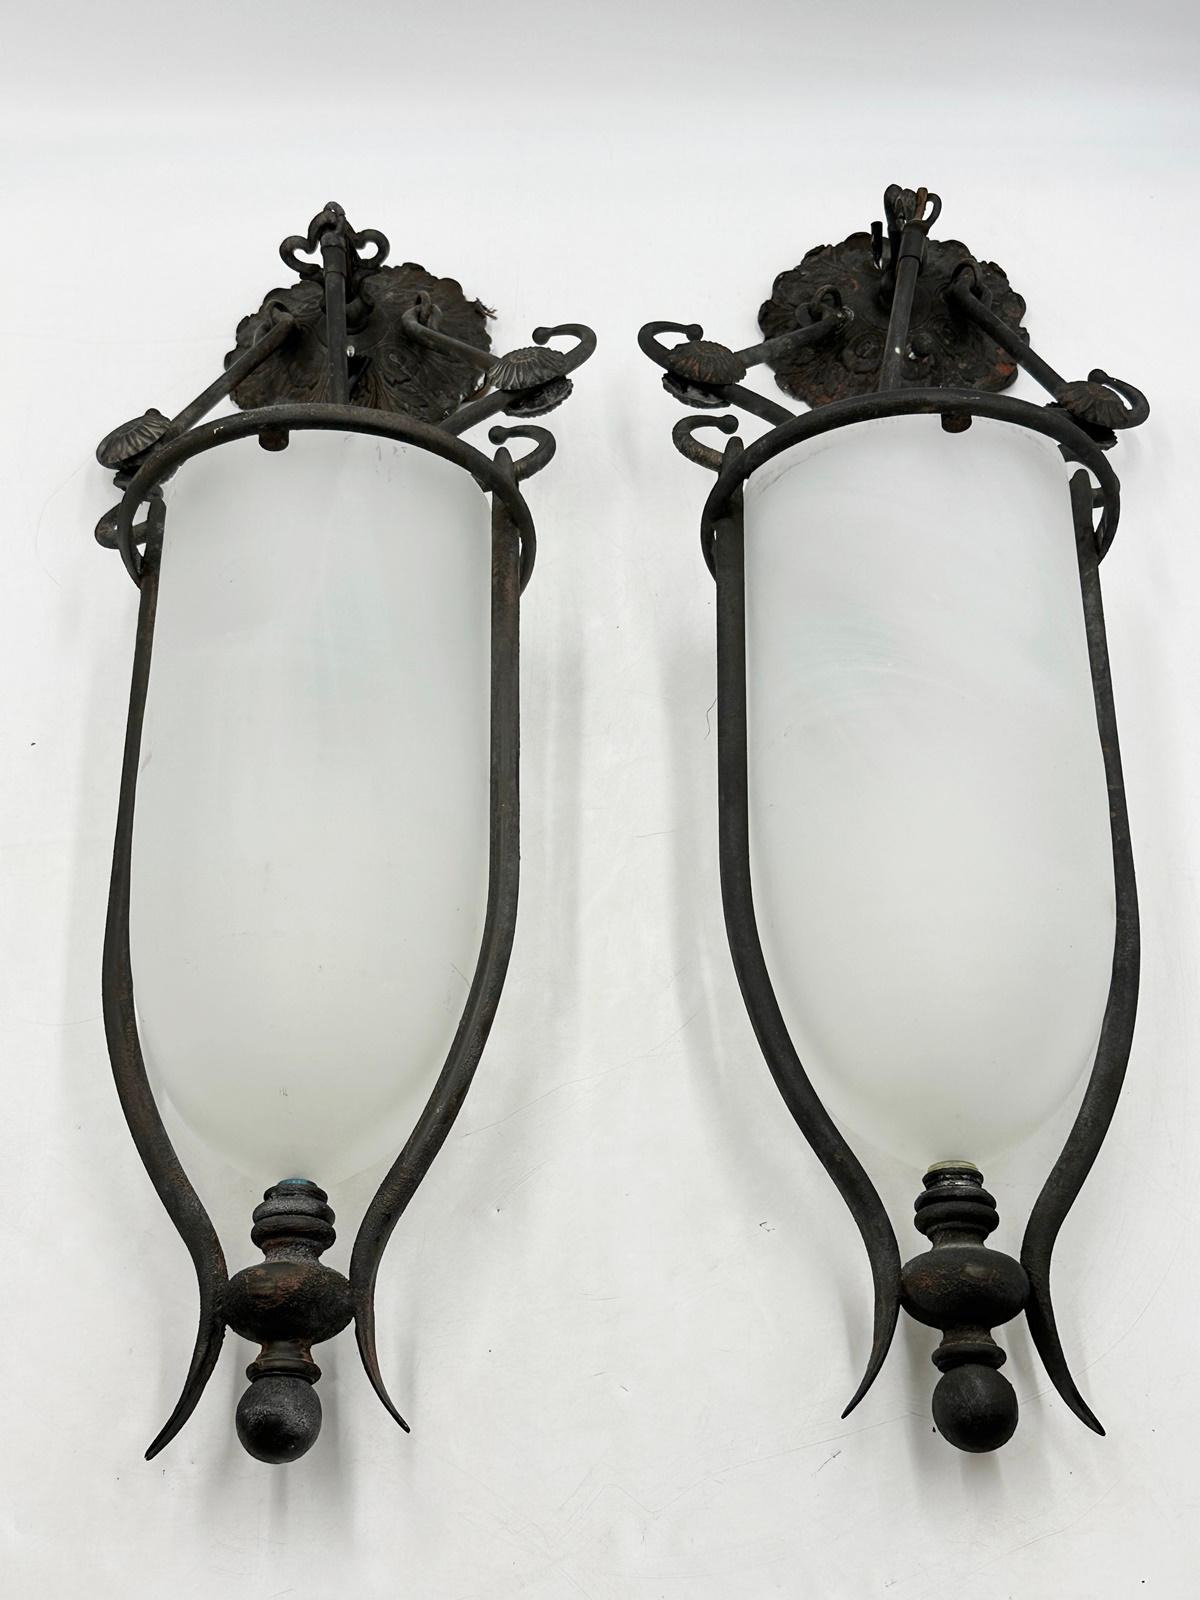 Voici l'exquise paire de lanternes en verre et en acier fabriquée par les estimés Lantern Masters, USA 2000's. 

Ces appliques opulentes redéfinissent l'Eleg avec leur fusion captivante de verre et d'acier.
 Les abat-jours en verre, méticuleusement